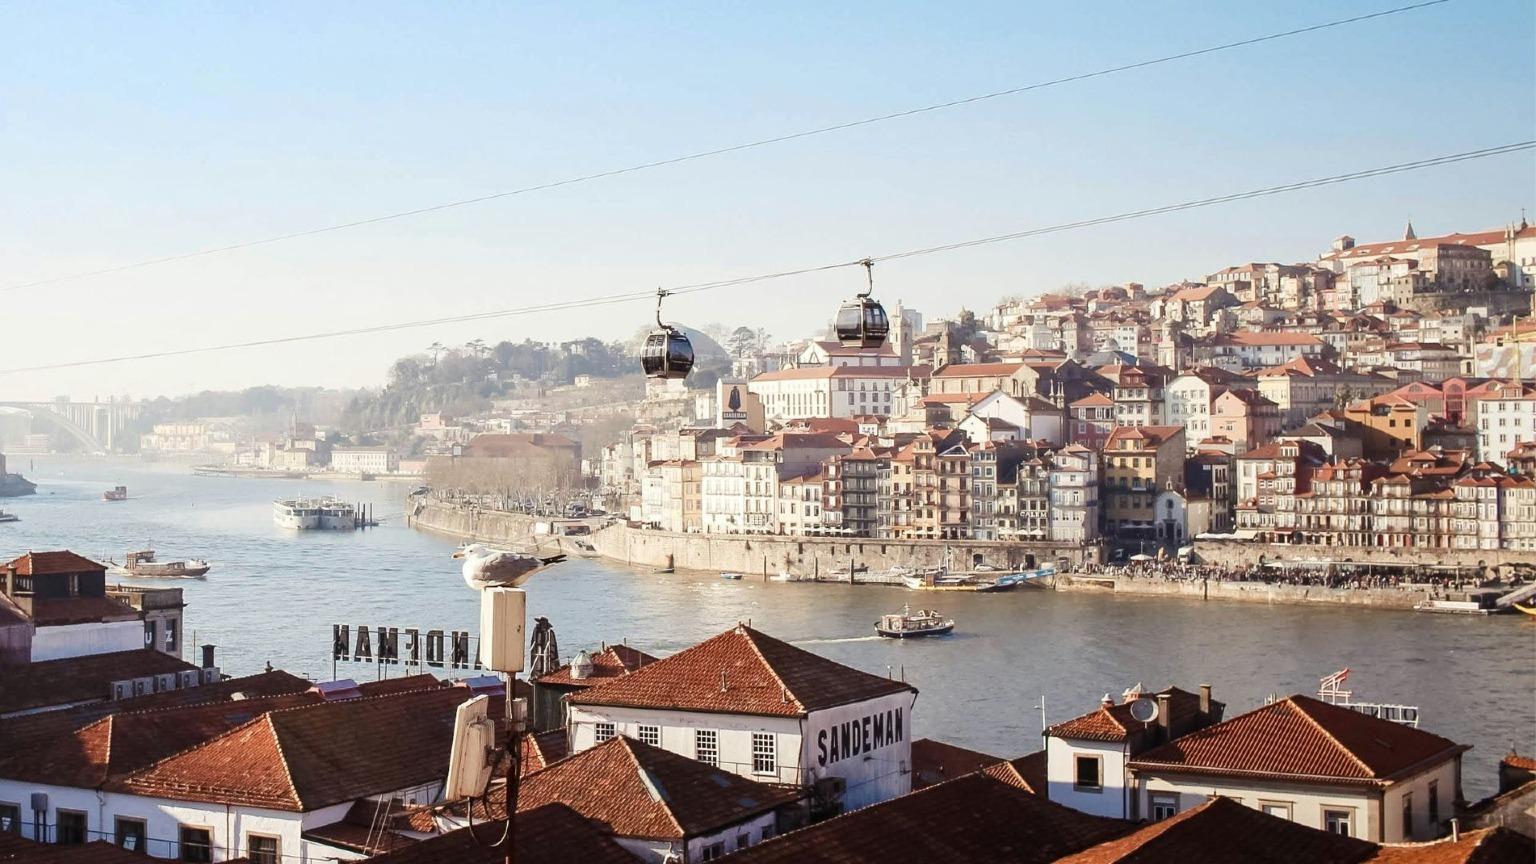 Une vue panoramique depuis Gaia montre le téléphérique, les caves à vin, le fleuve Douro et la ligne d'horizon de Porto.